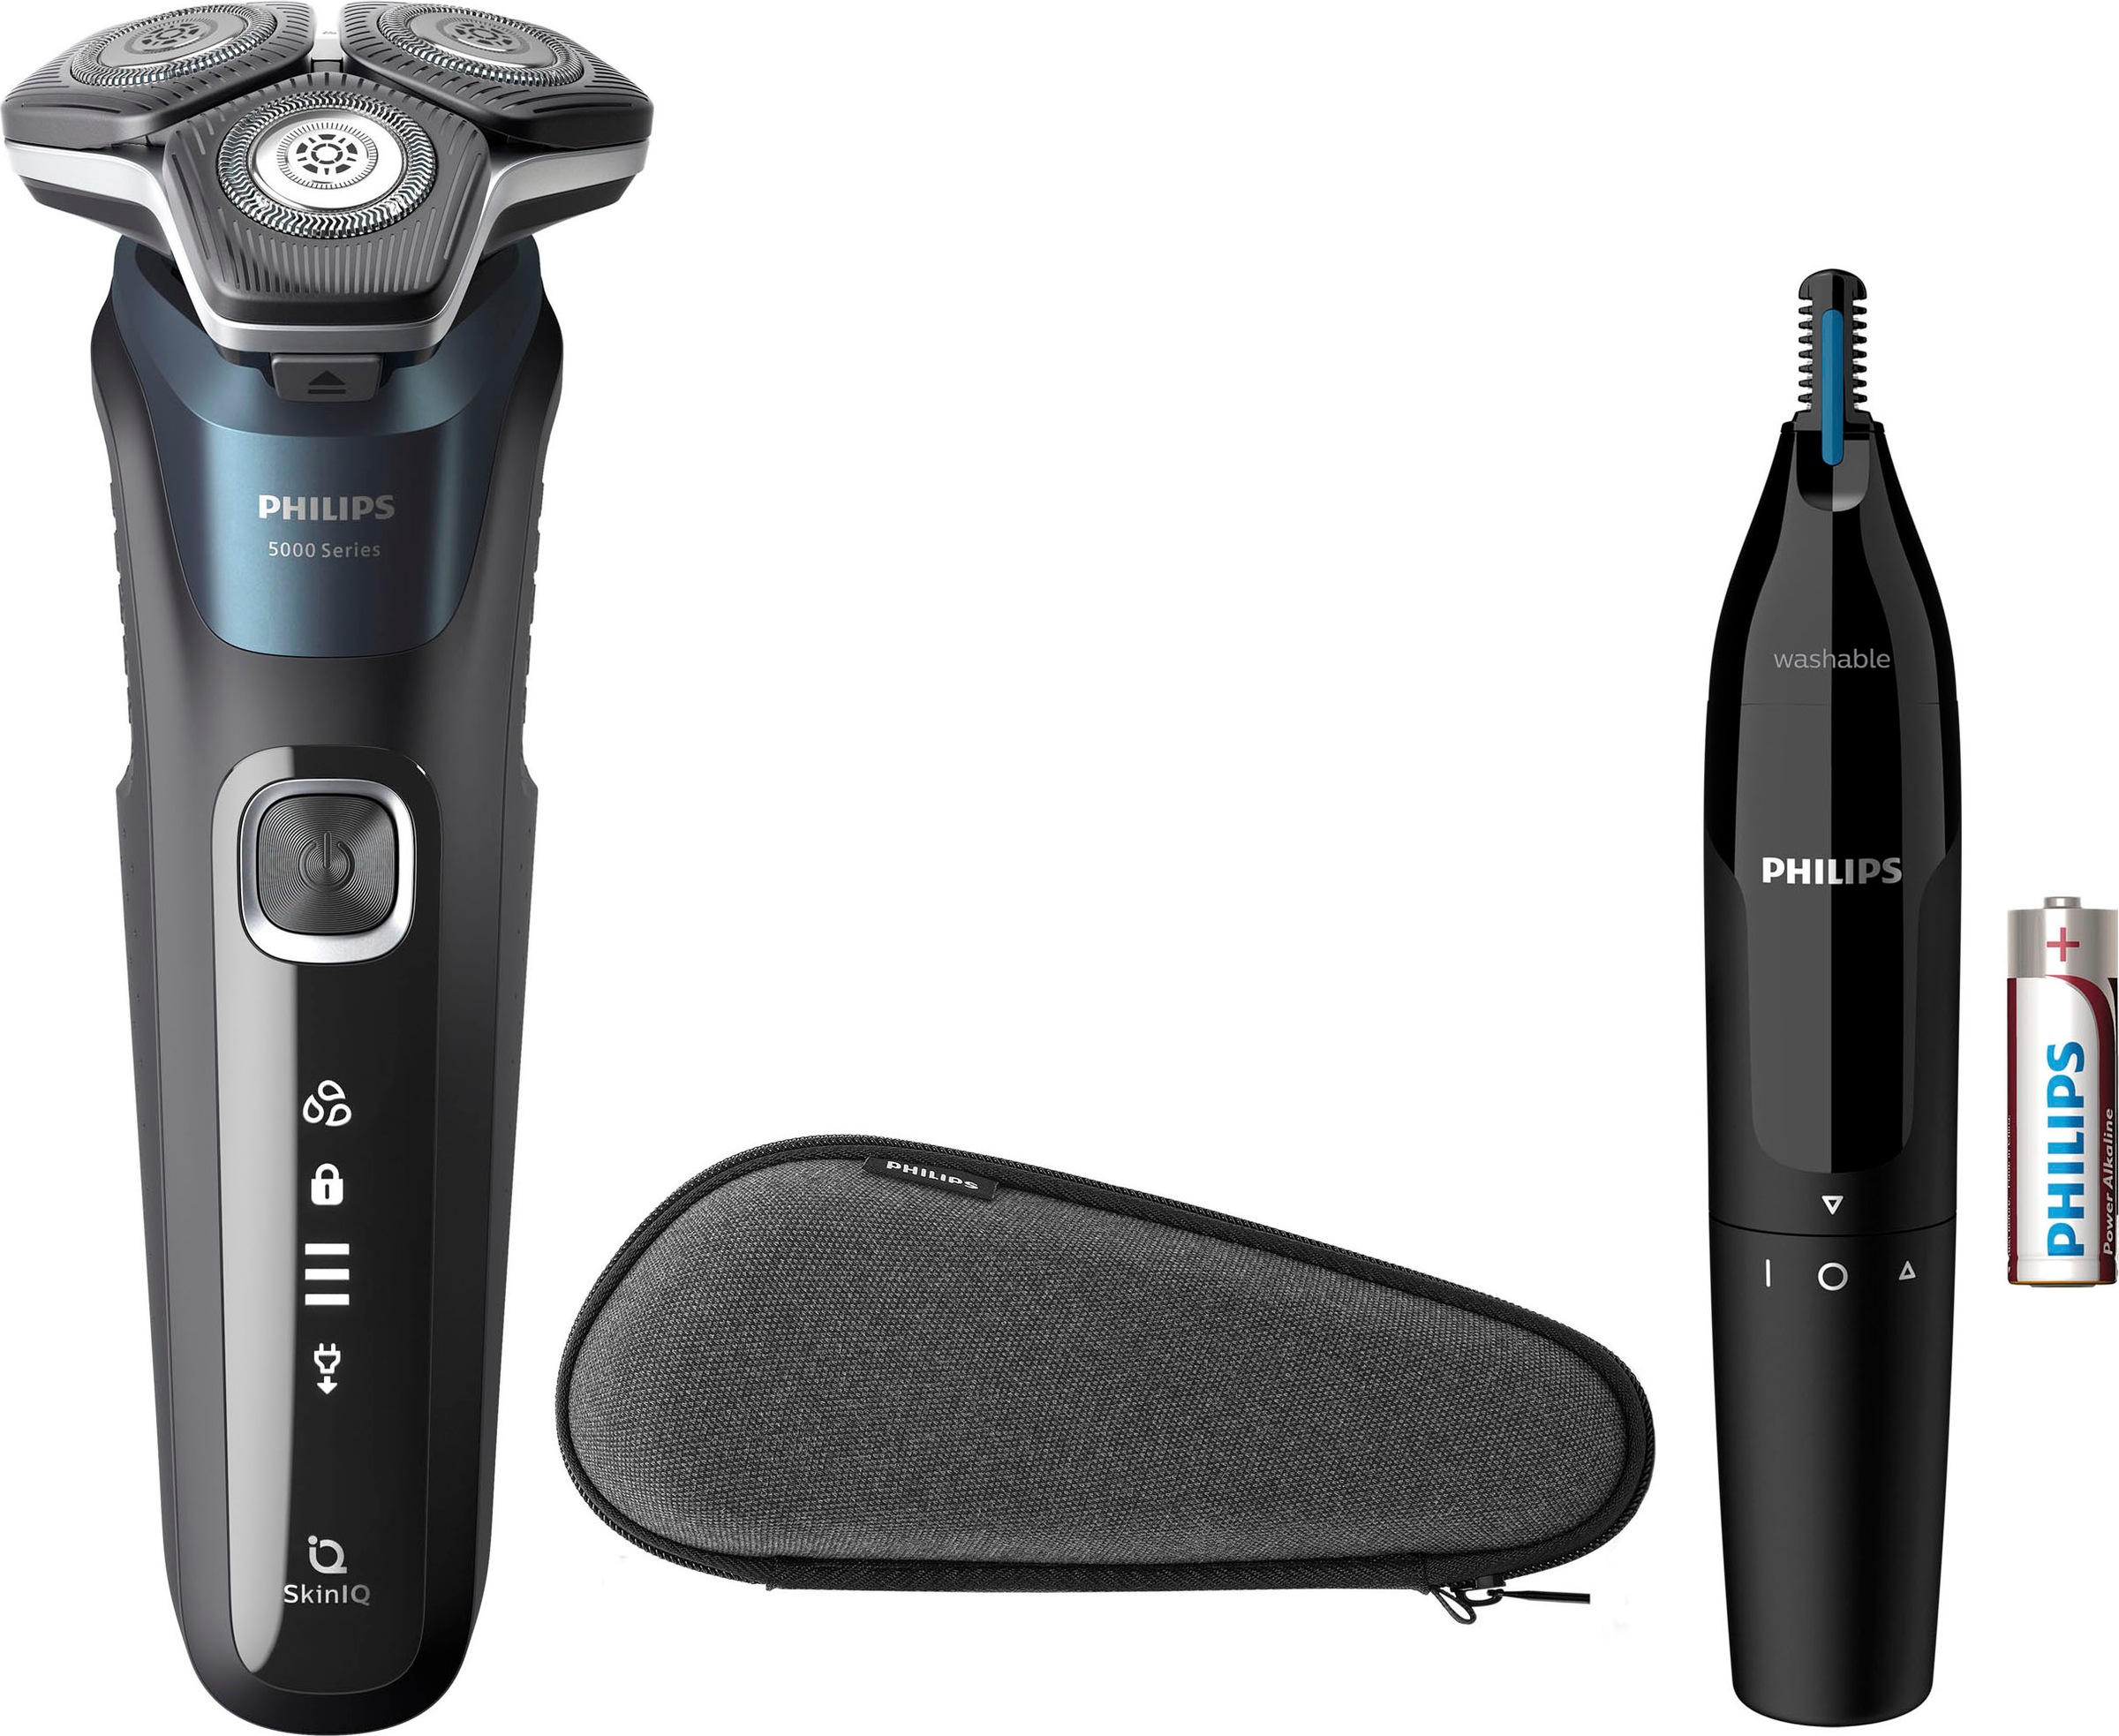 Philips Elektrorasierer »Shaver SkinIQ Nasen- kaufen S5889/11«, Series 5000 günstig | Technologie mit und Präzisionstrimmer, Ohrenhaartrimmer, ausklappbarer Etui